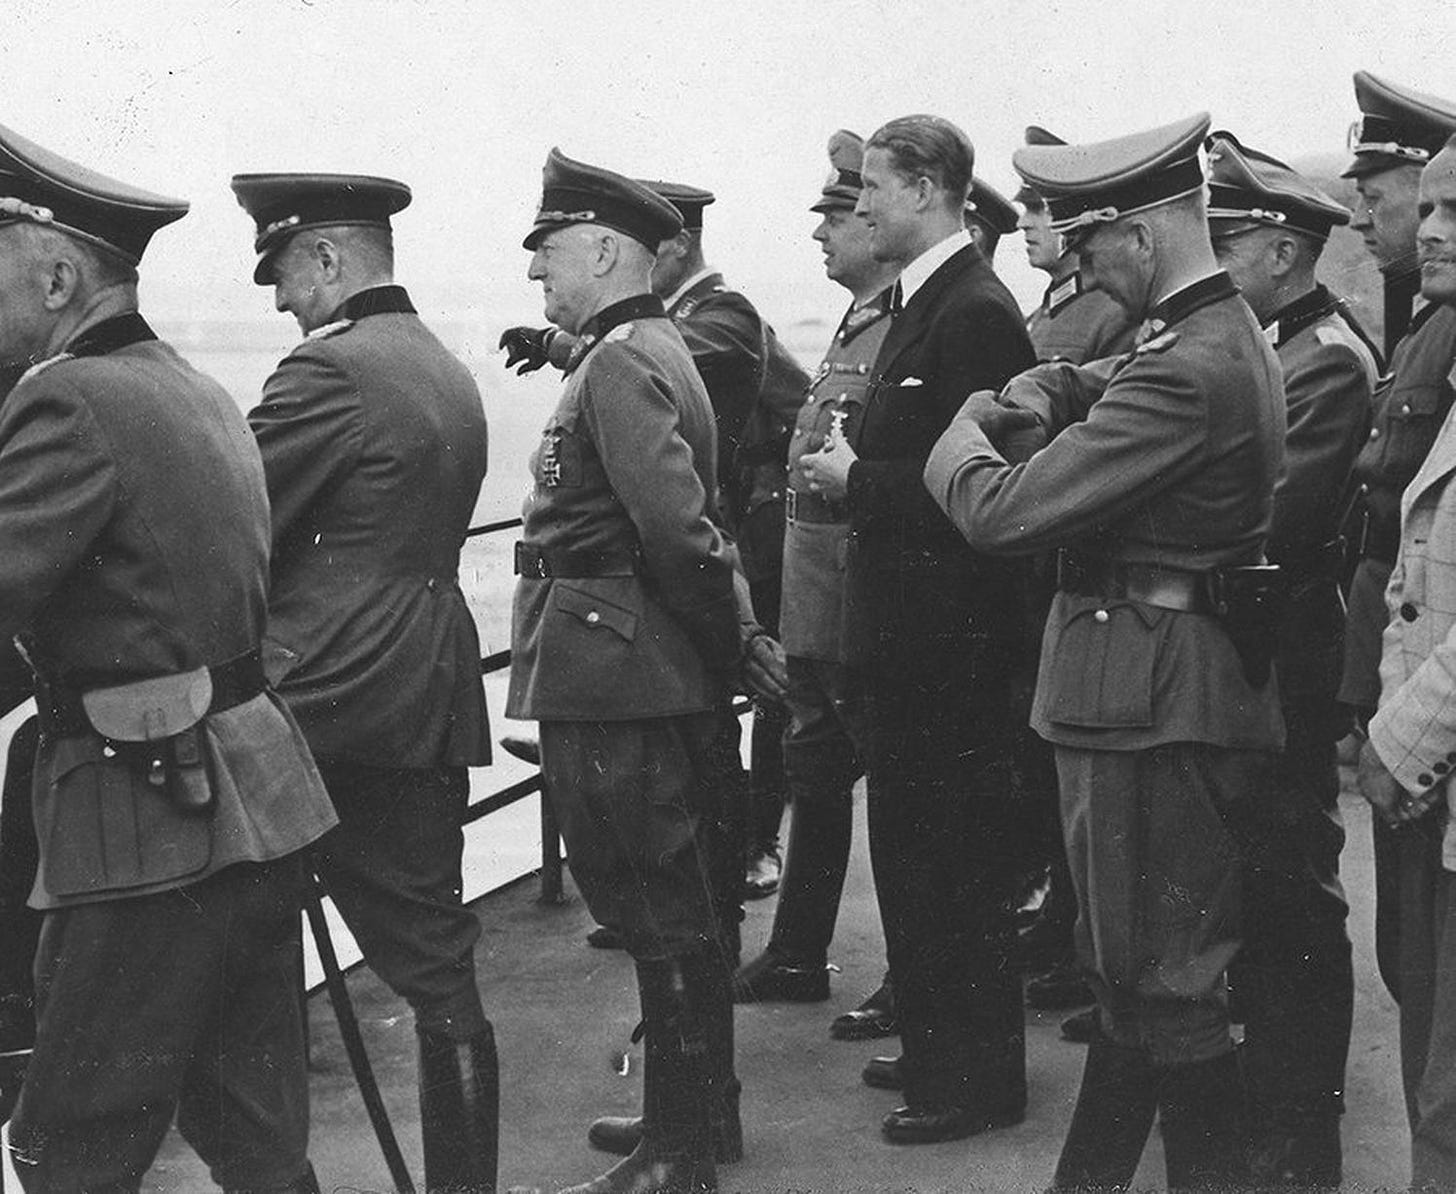 Nazi scientist Wernher von Braun, watches the launch of a missile with Field Marshall Walther von Brauchitsch